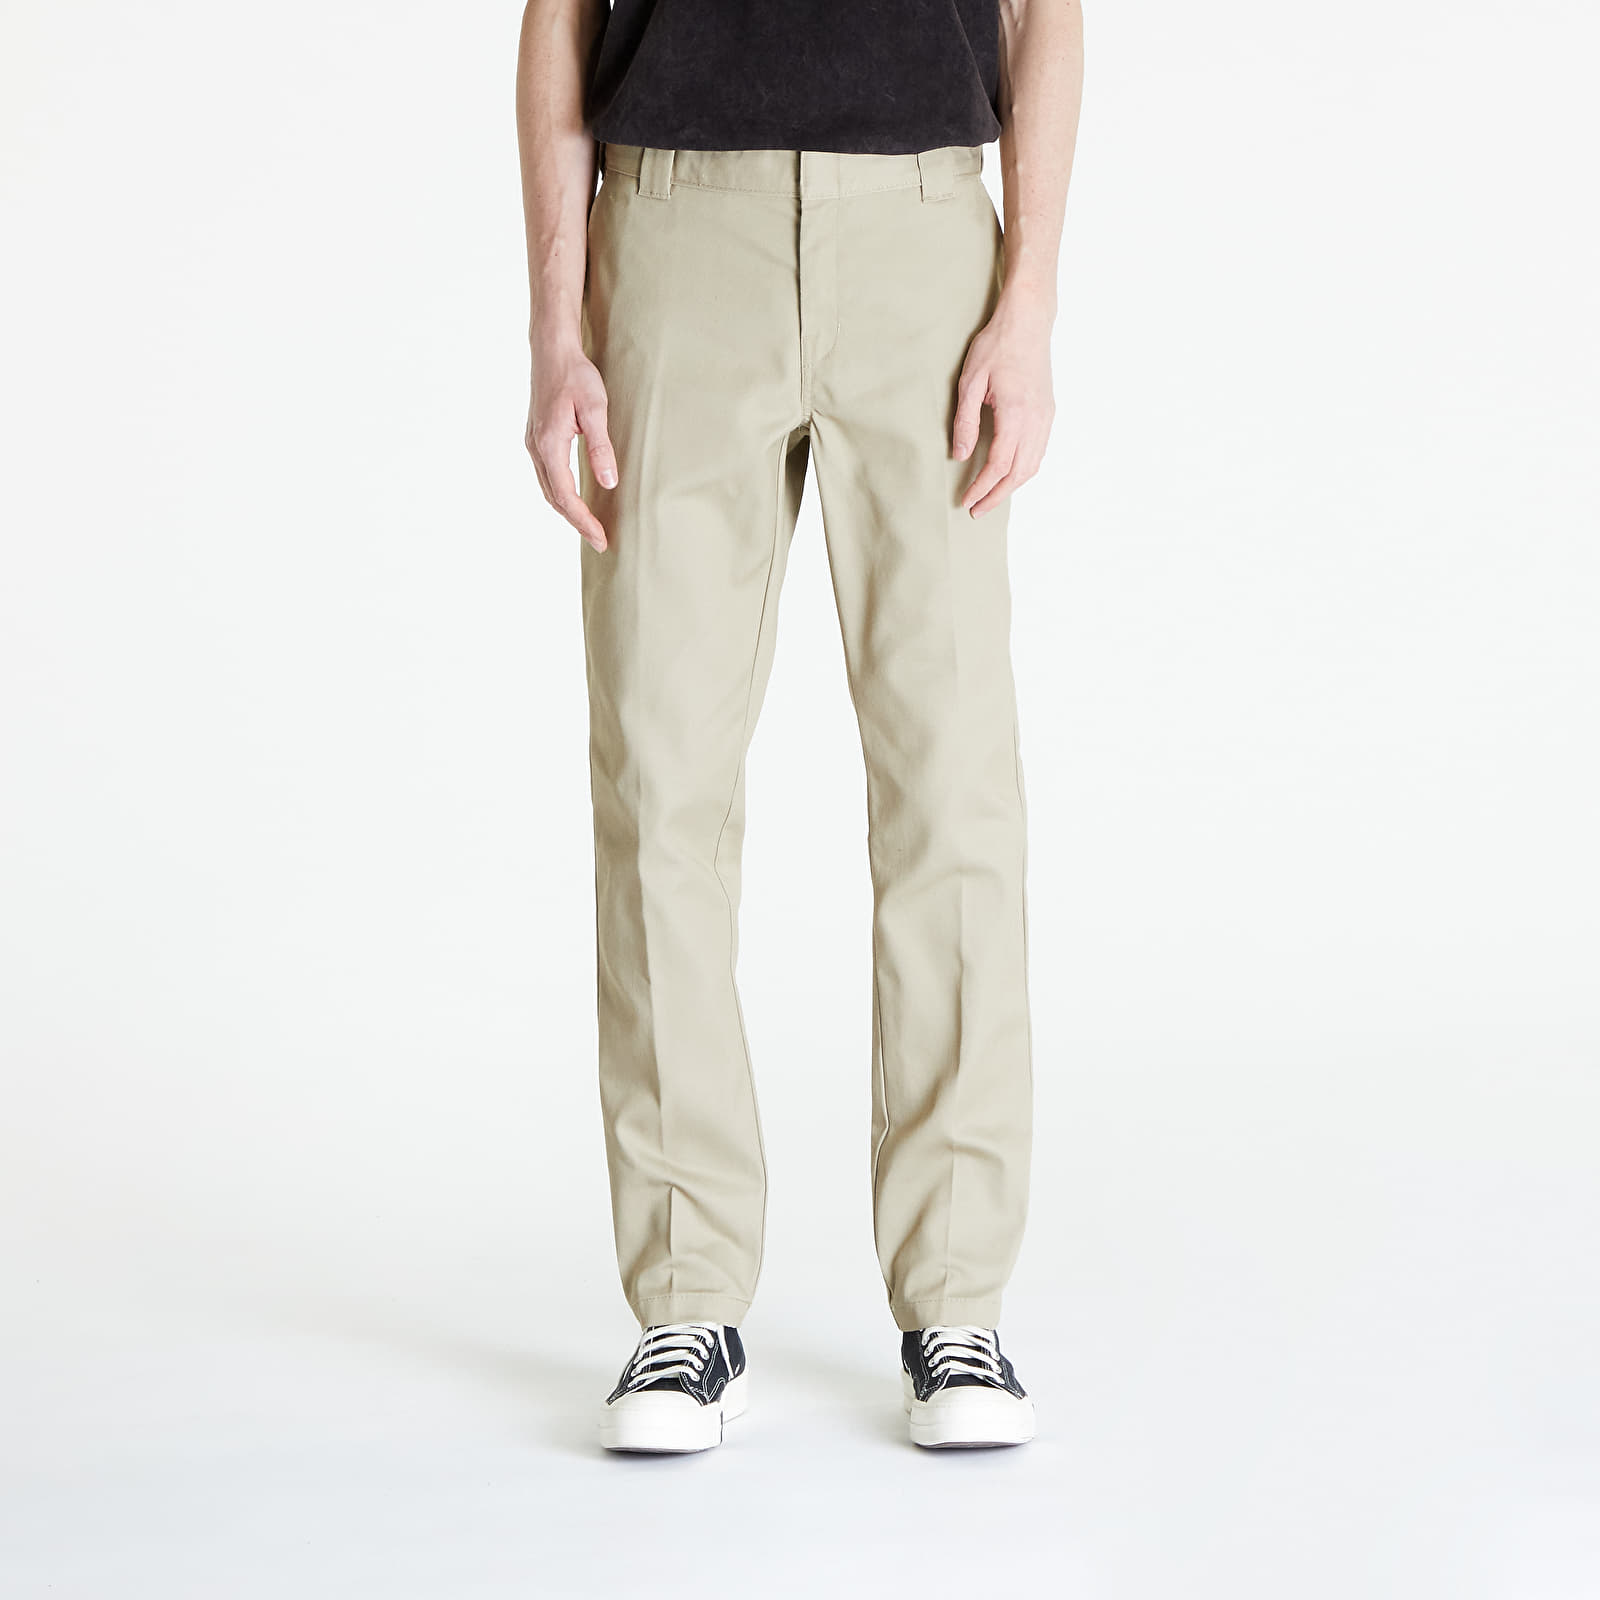 Dickies 874 Work Pants - Casual trousers Men's, Buy online